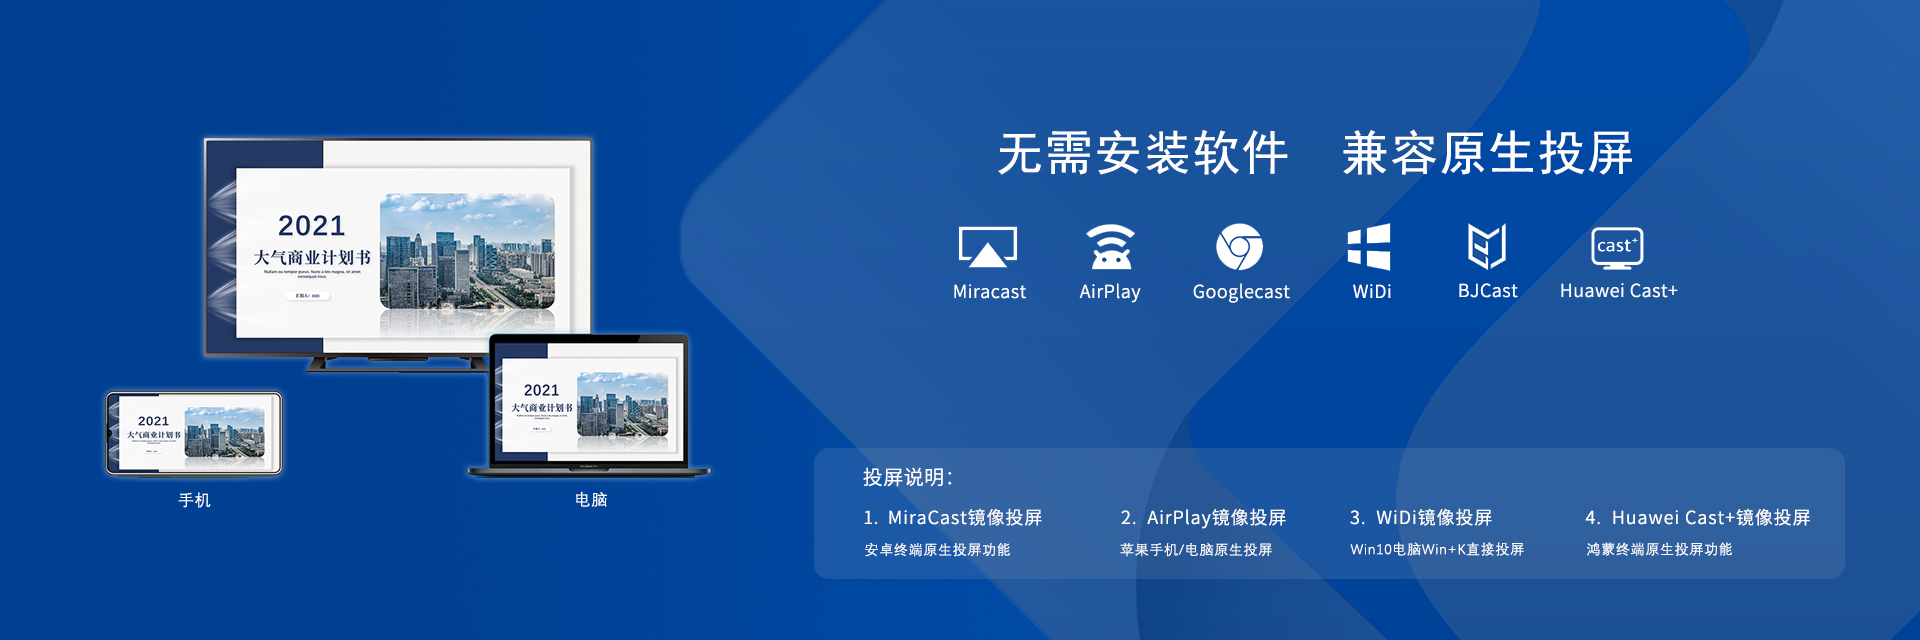 浙江会议网提供智慧办公产品-兼容原生投屏协议的无线投屏设备